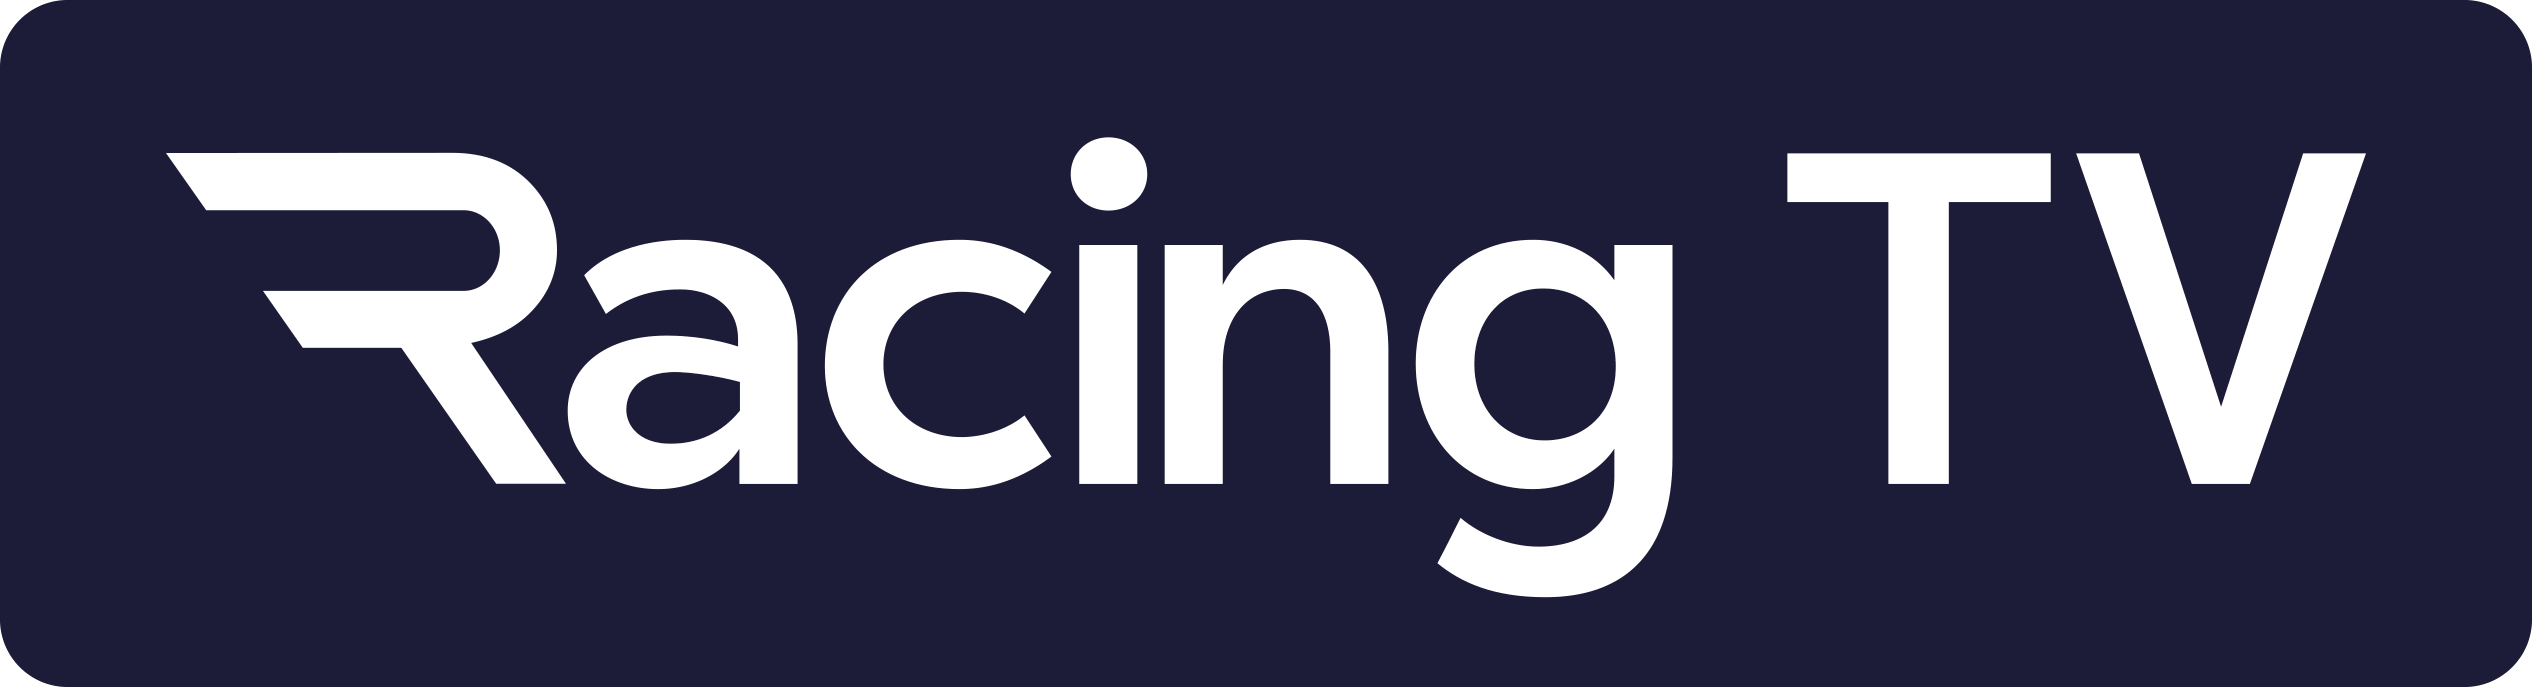 Racing TV logo